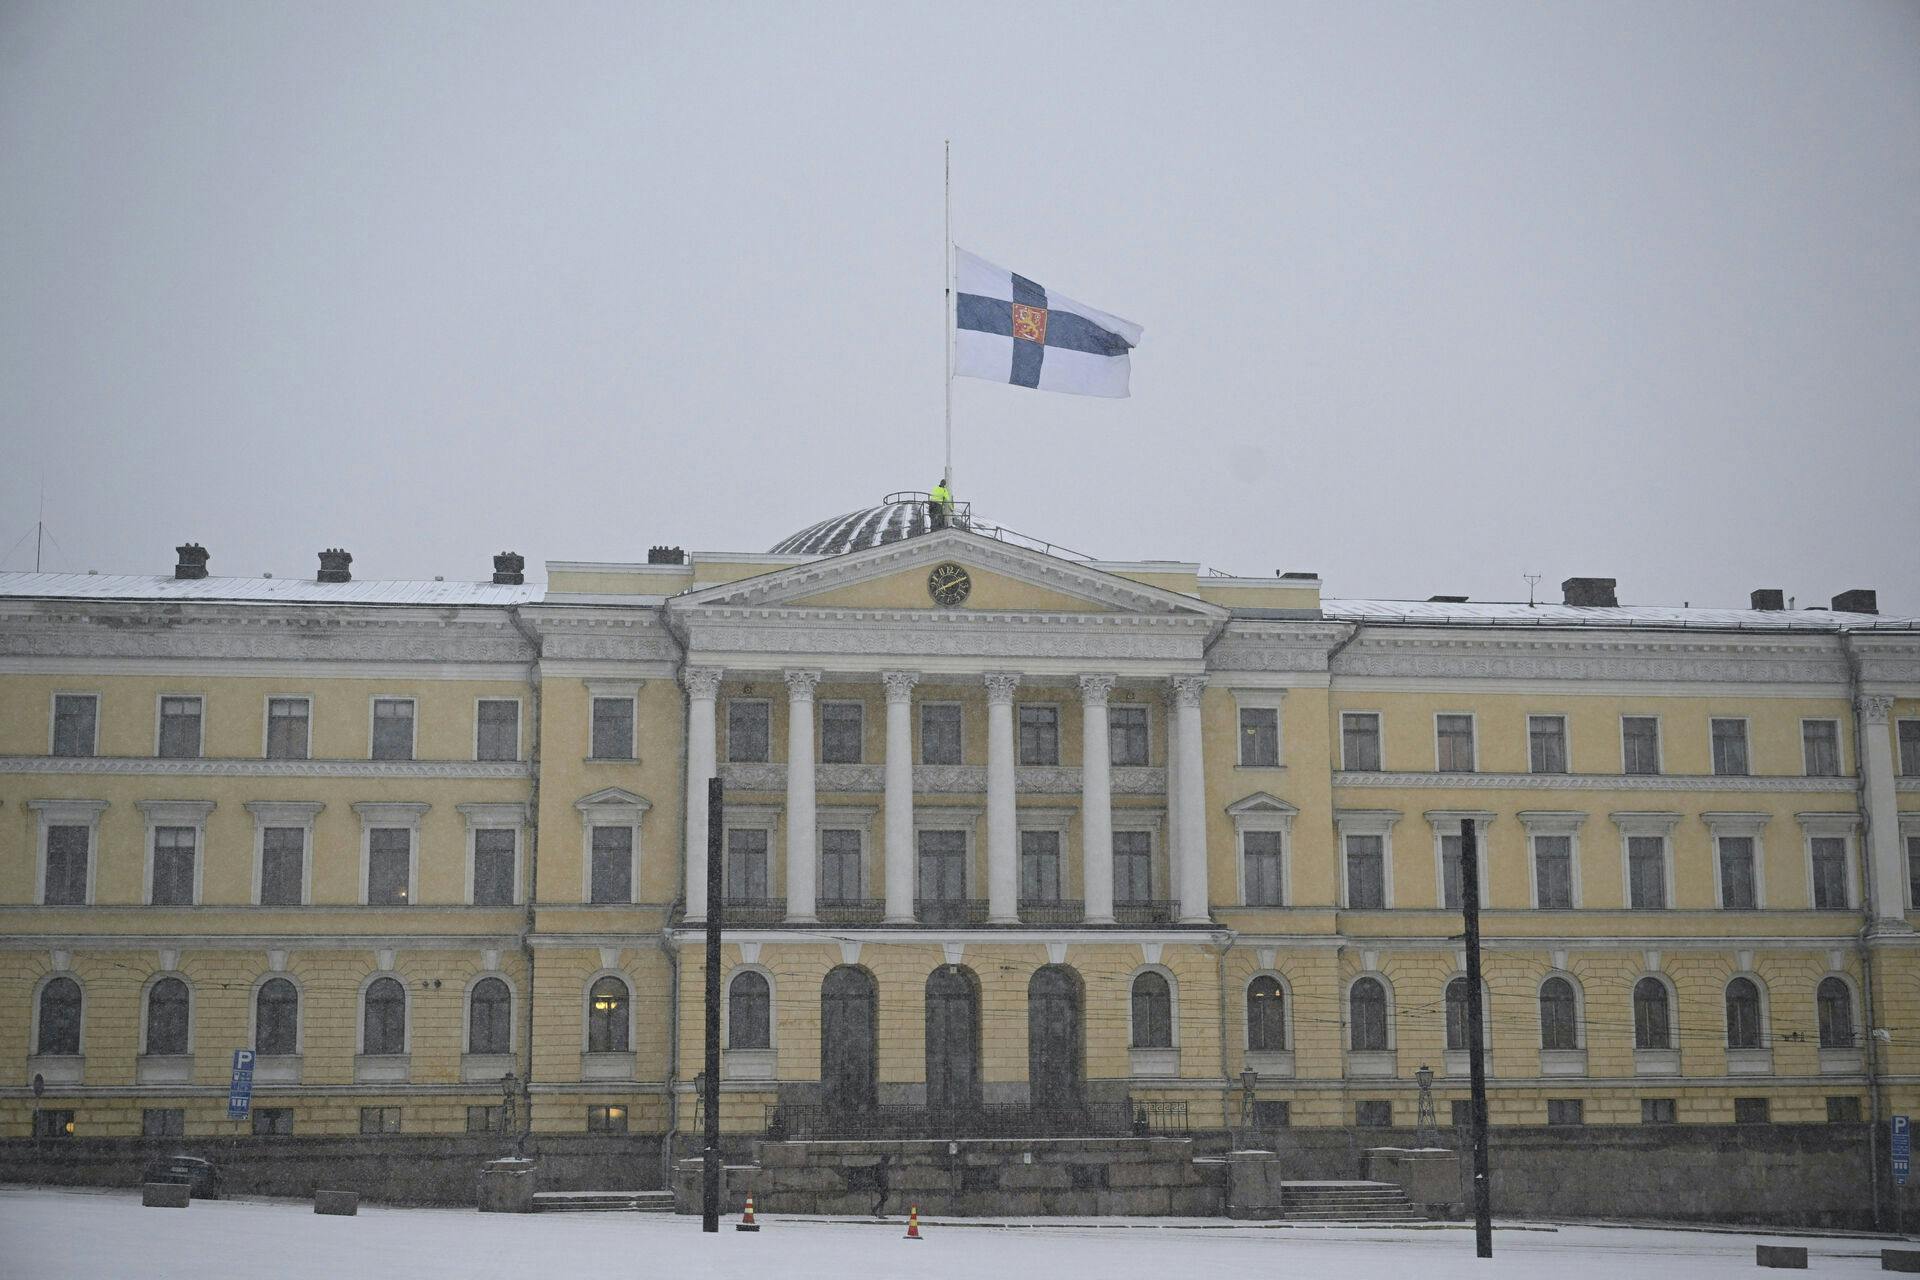 Tirsdag mistede en 12-årig skoleelev livet efter et skoleskyderi i Finland. Dagen efter flager alle offentlige bygninger og institutioner i landet på halvt.